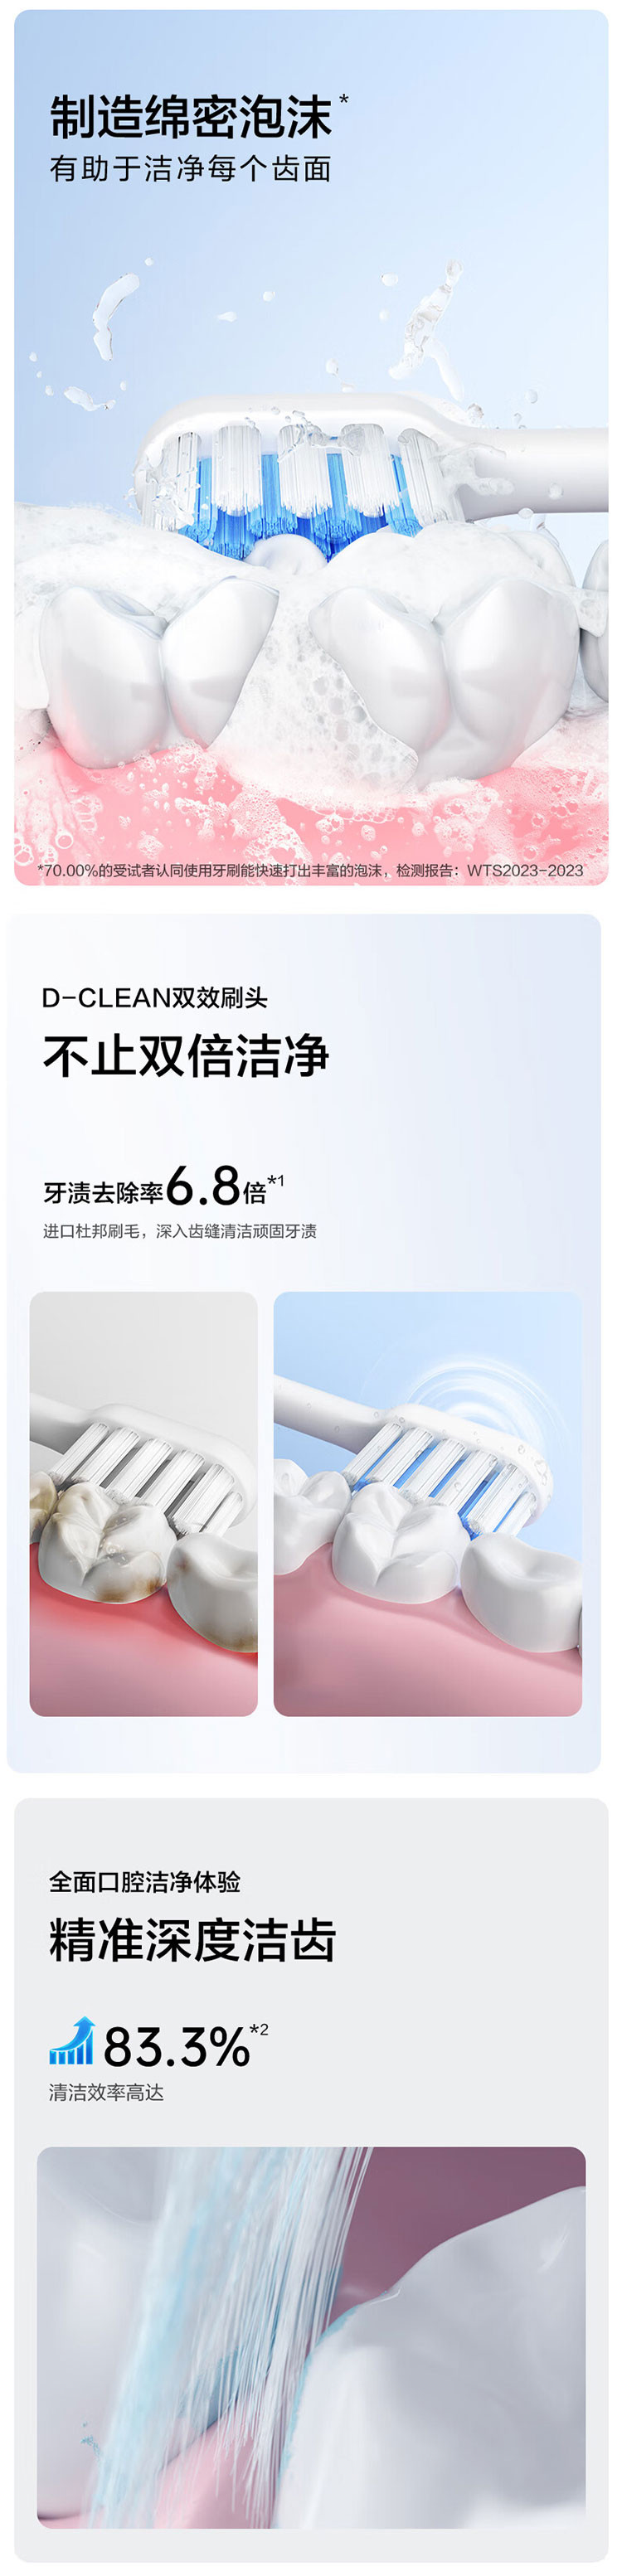 松下/PANASONIC 5档清洁模式 去渍 呵护牙龈 滑动解锁 EW-DC20 标准